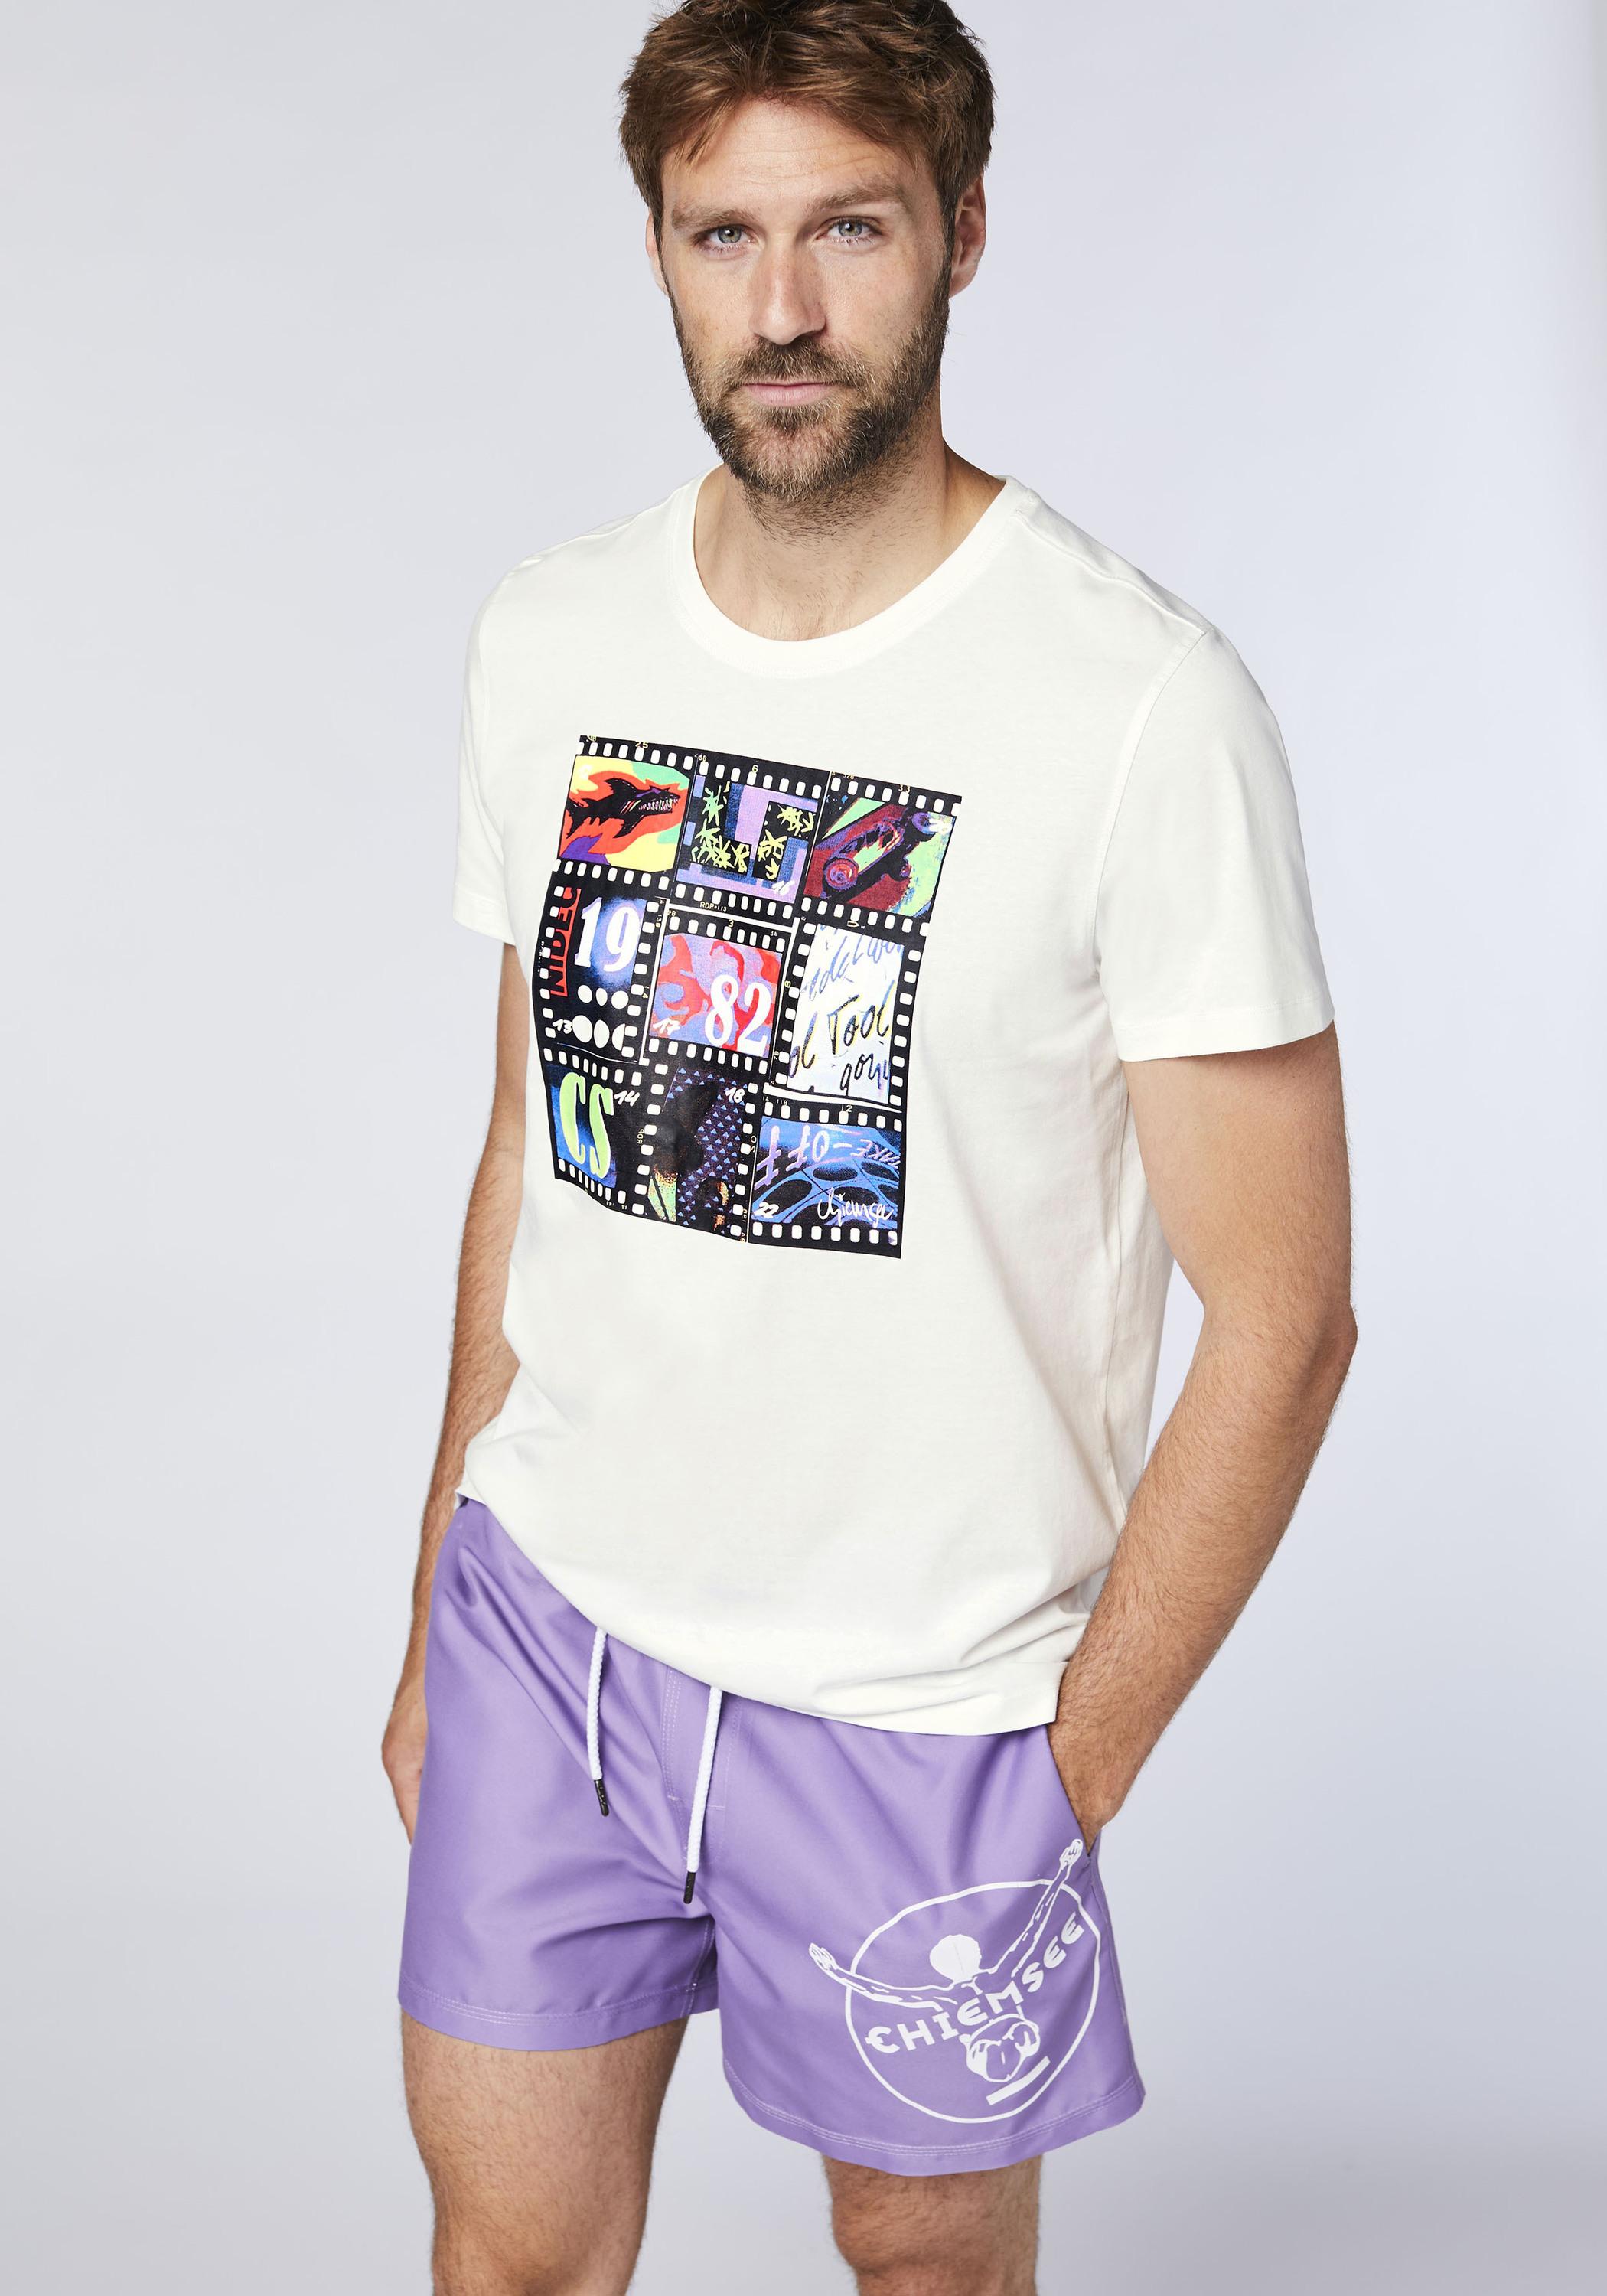 Chiemsee T-Shirt T-Shirt Herren im von Star Online kaufen White SportScheck Shop